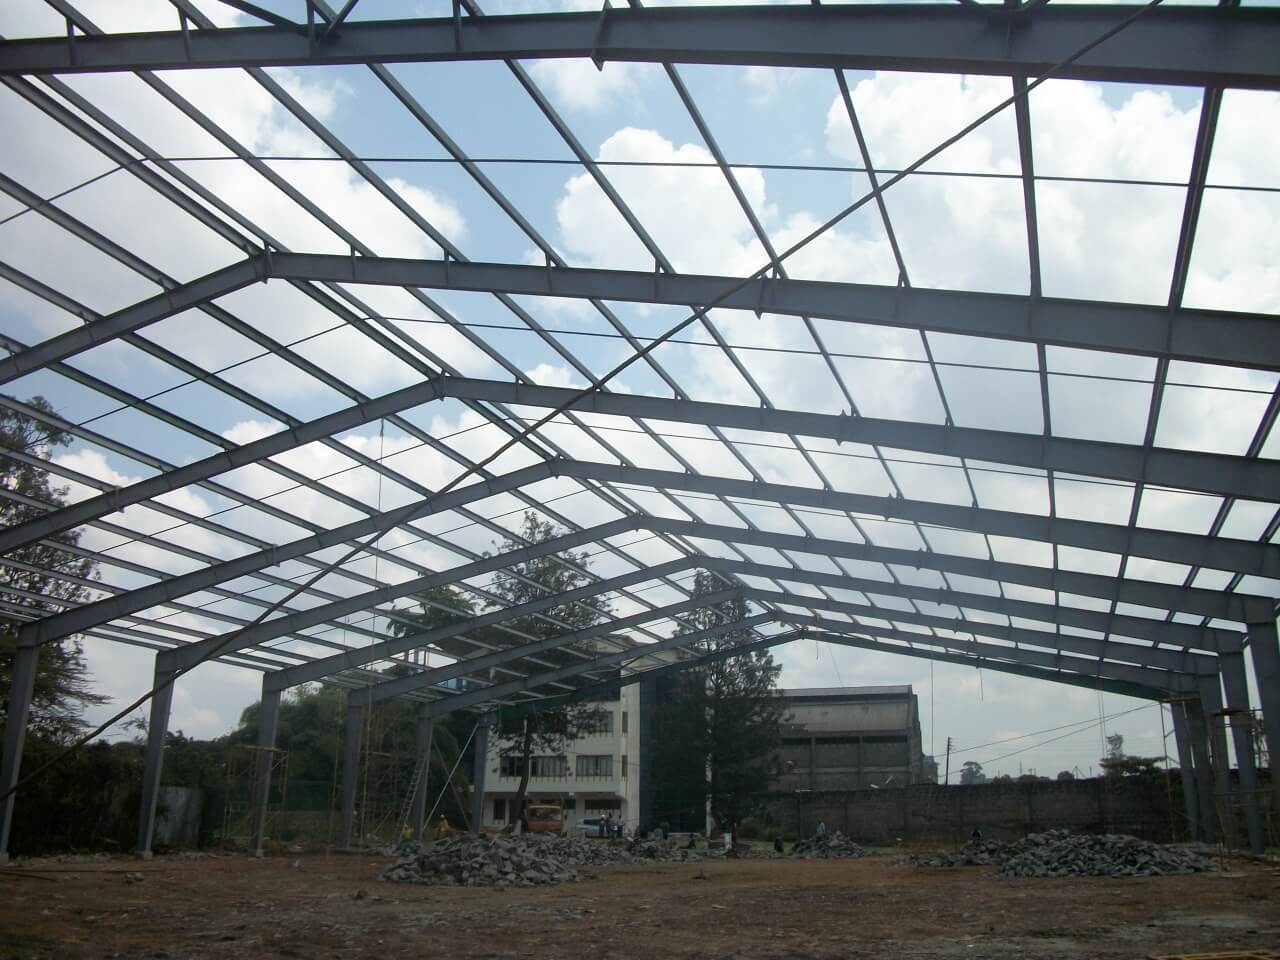 School Roof shed and Pillar in karen,Kenya